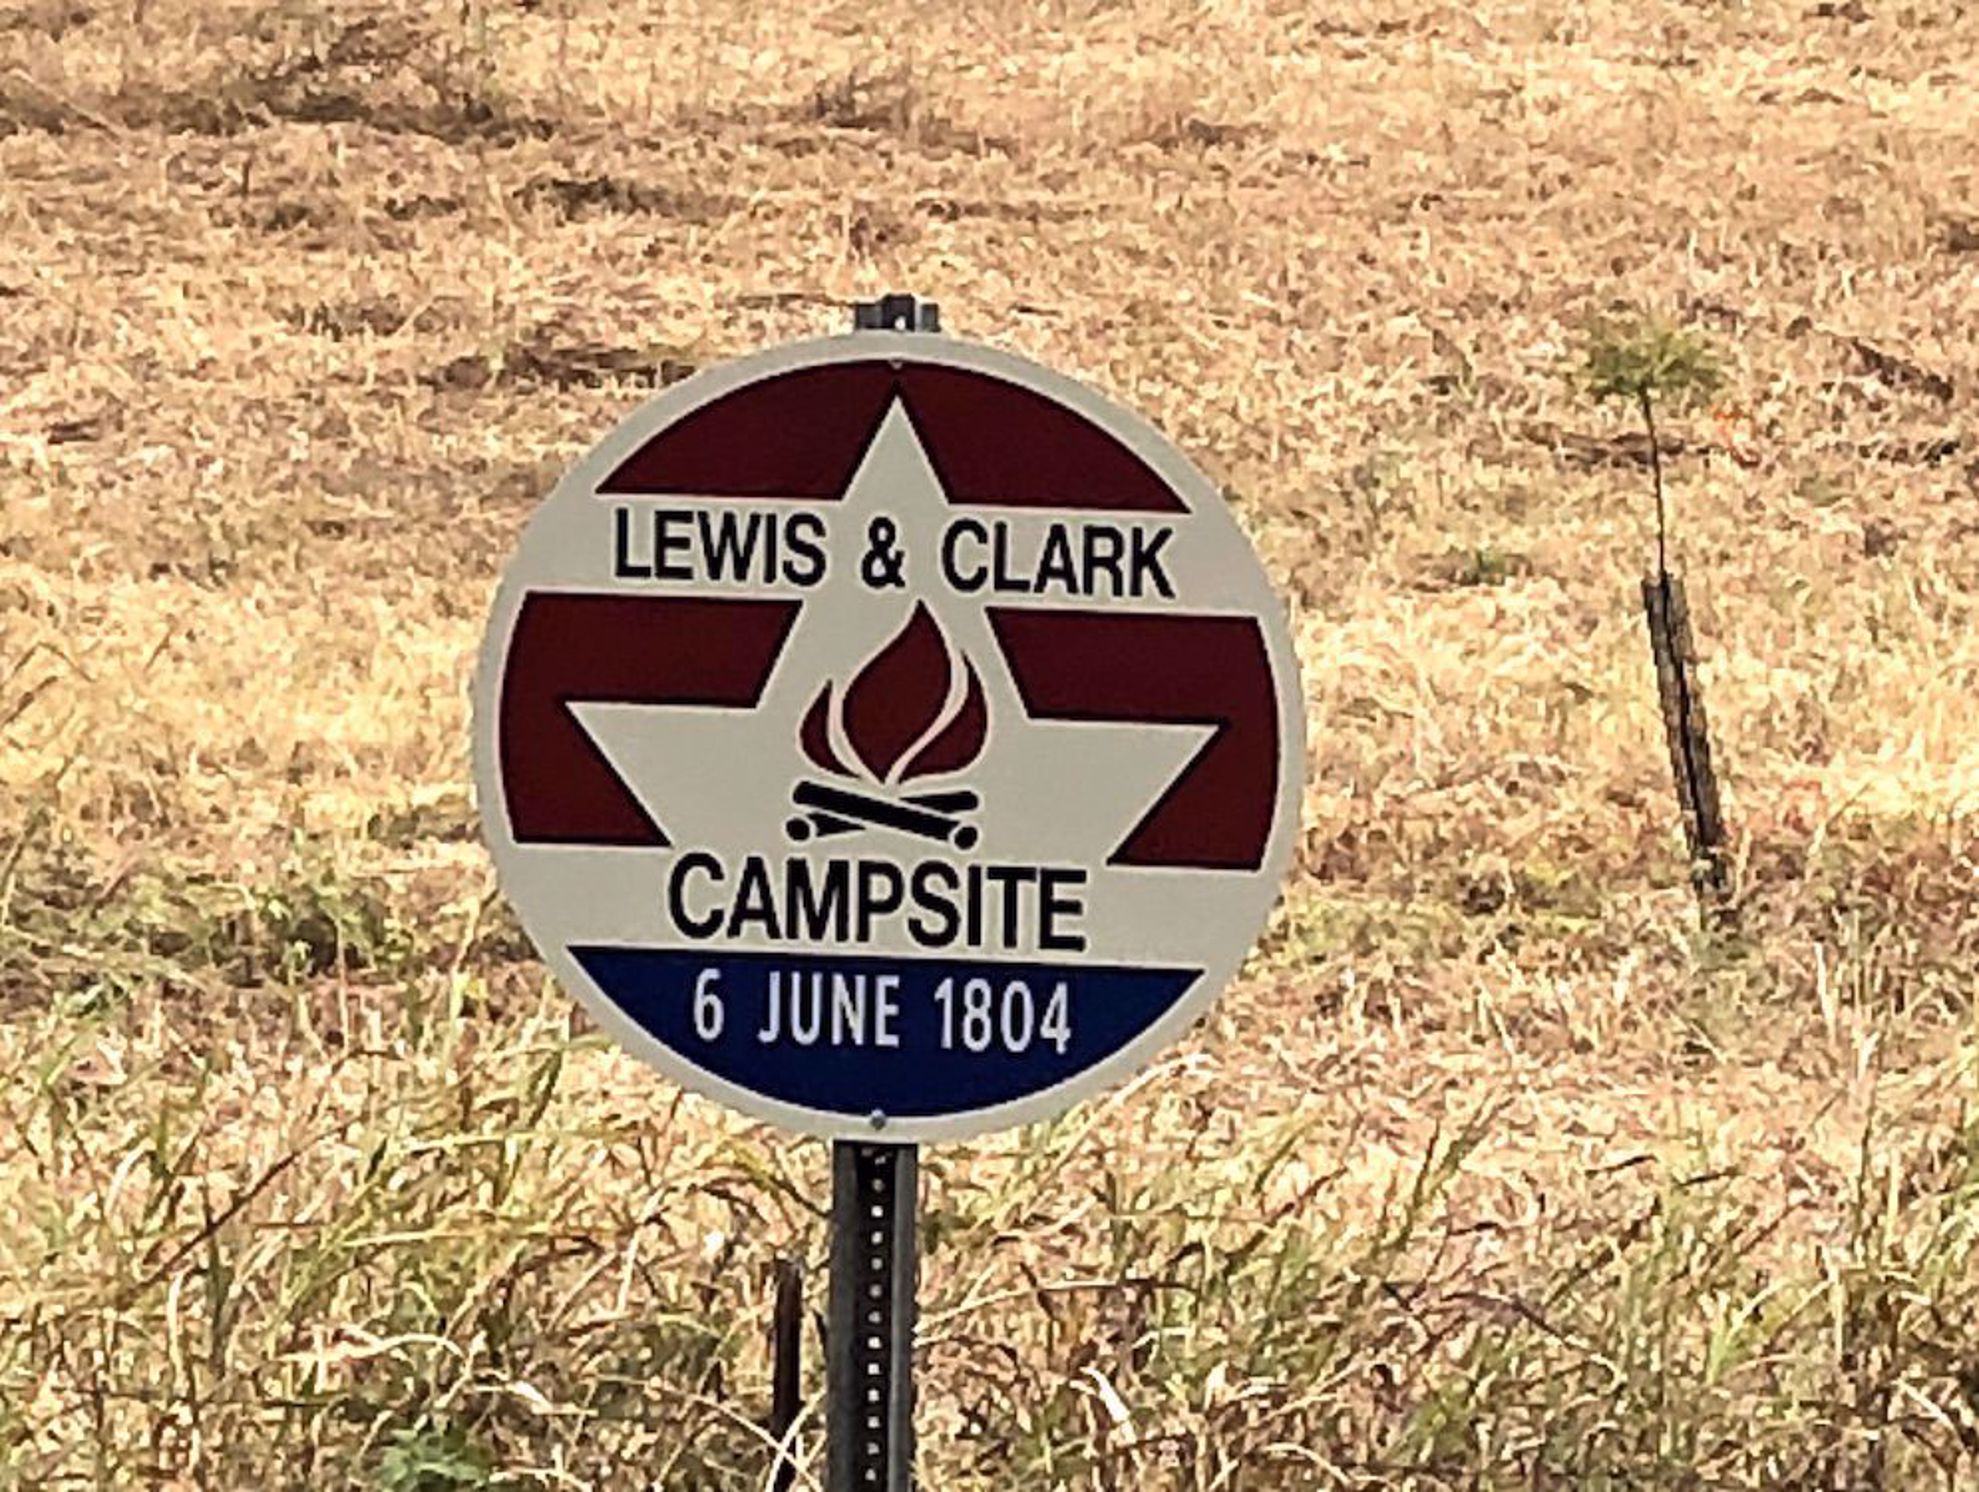 Lewis & Clark campsite sign